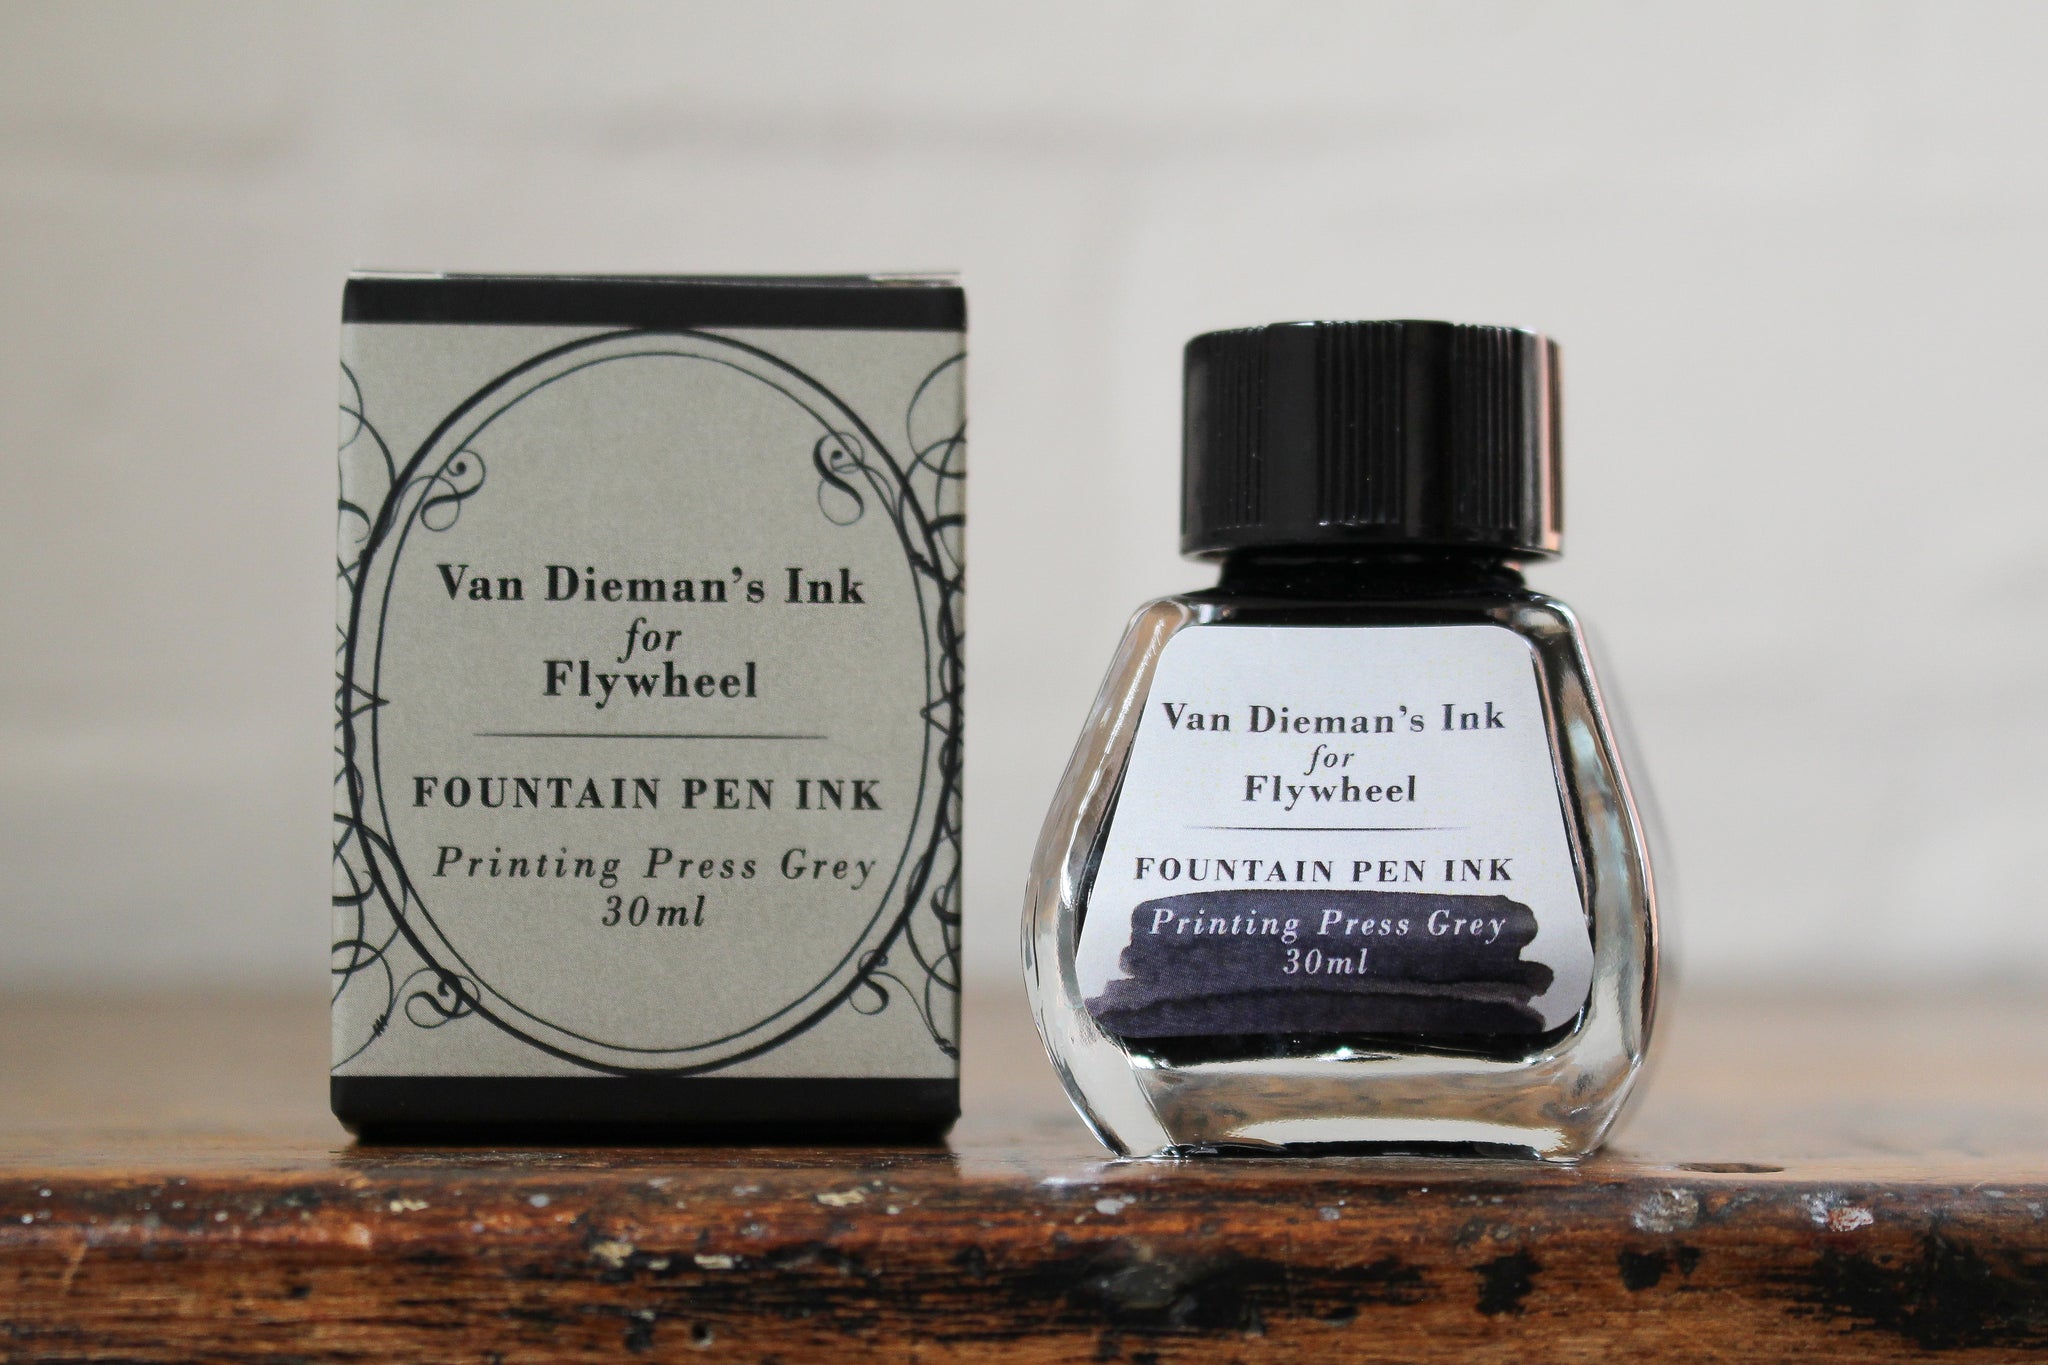 Van Dieman's Ink for Flywheel Fountain Pen Ink - Printing Press Grey